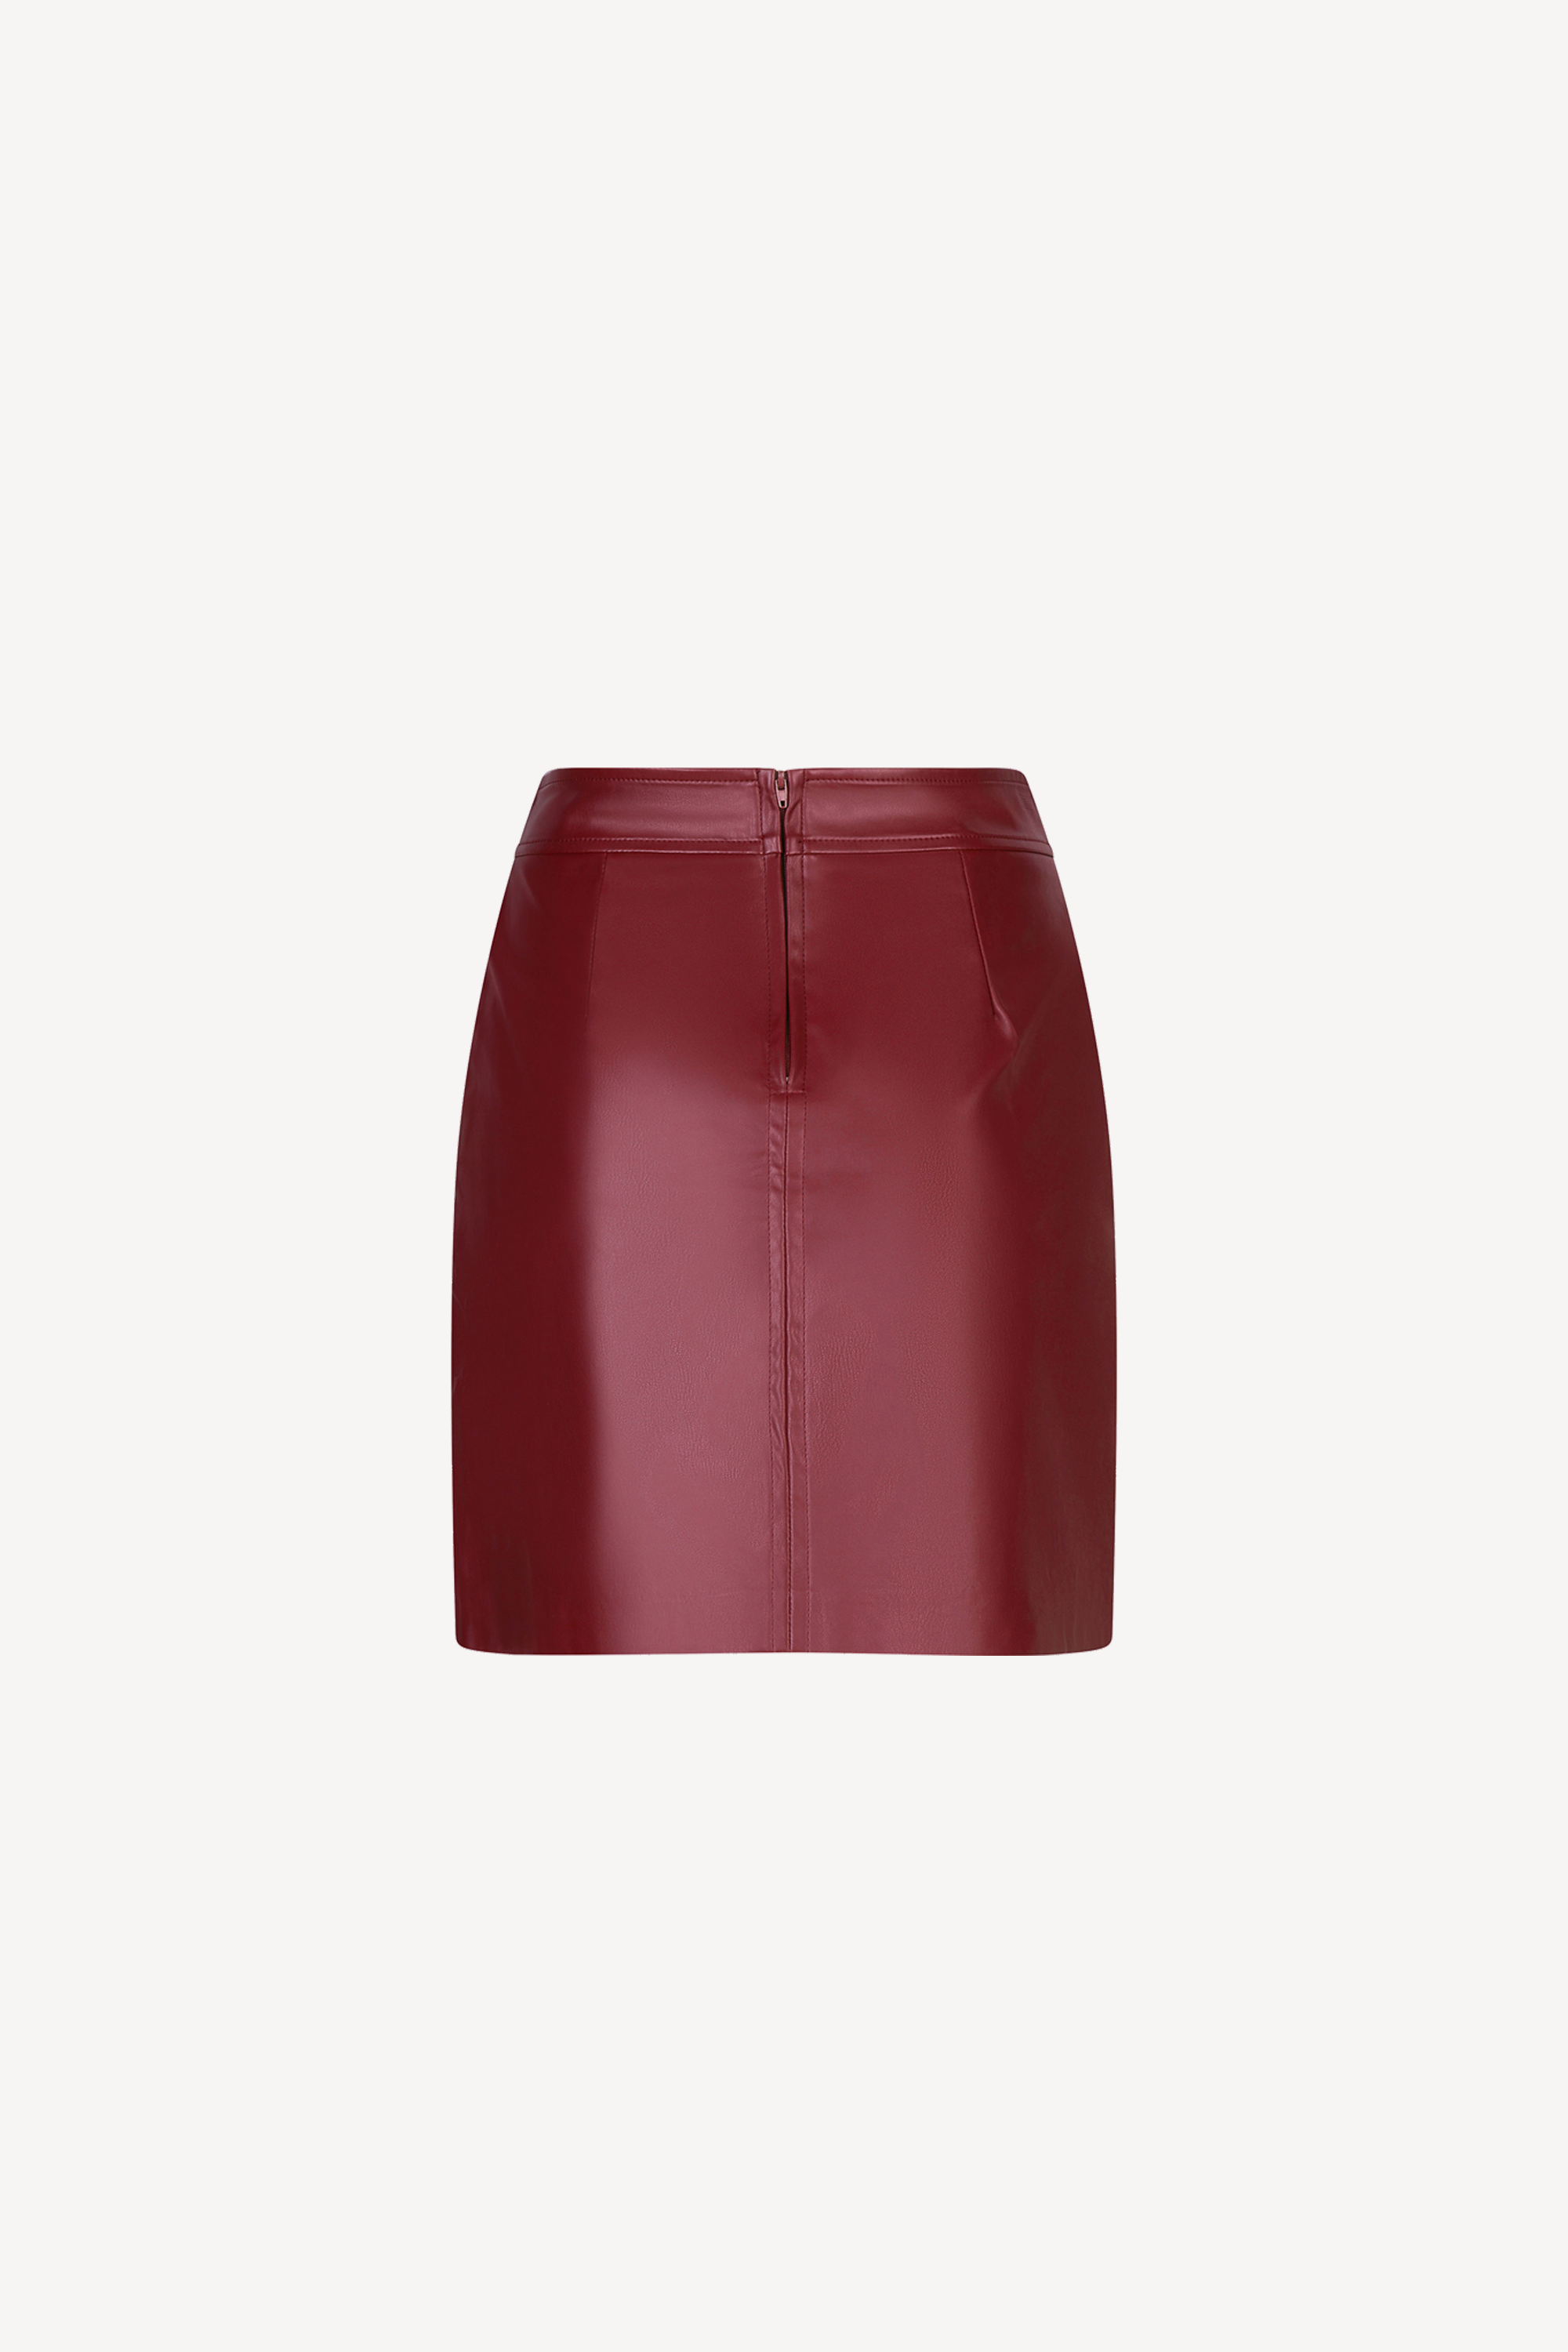 Chelsea Skirt Bordeaux